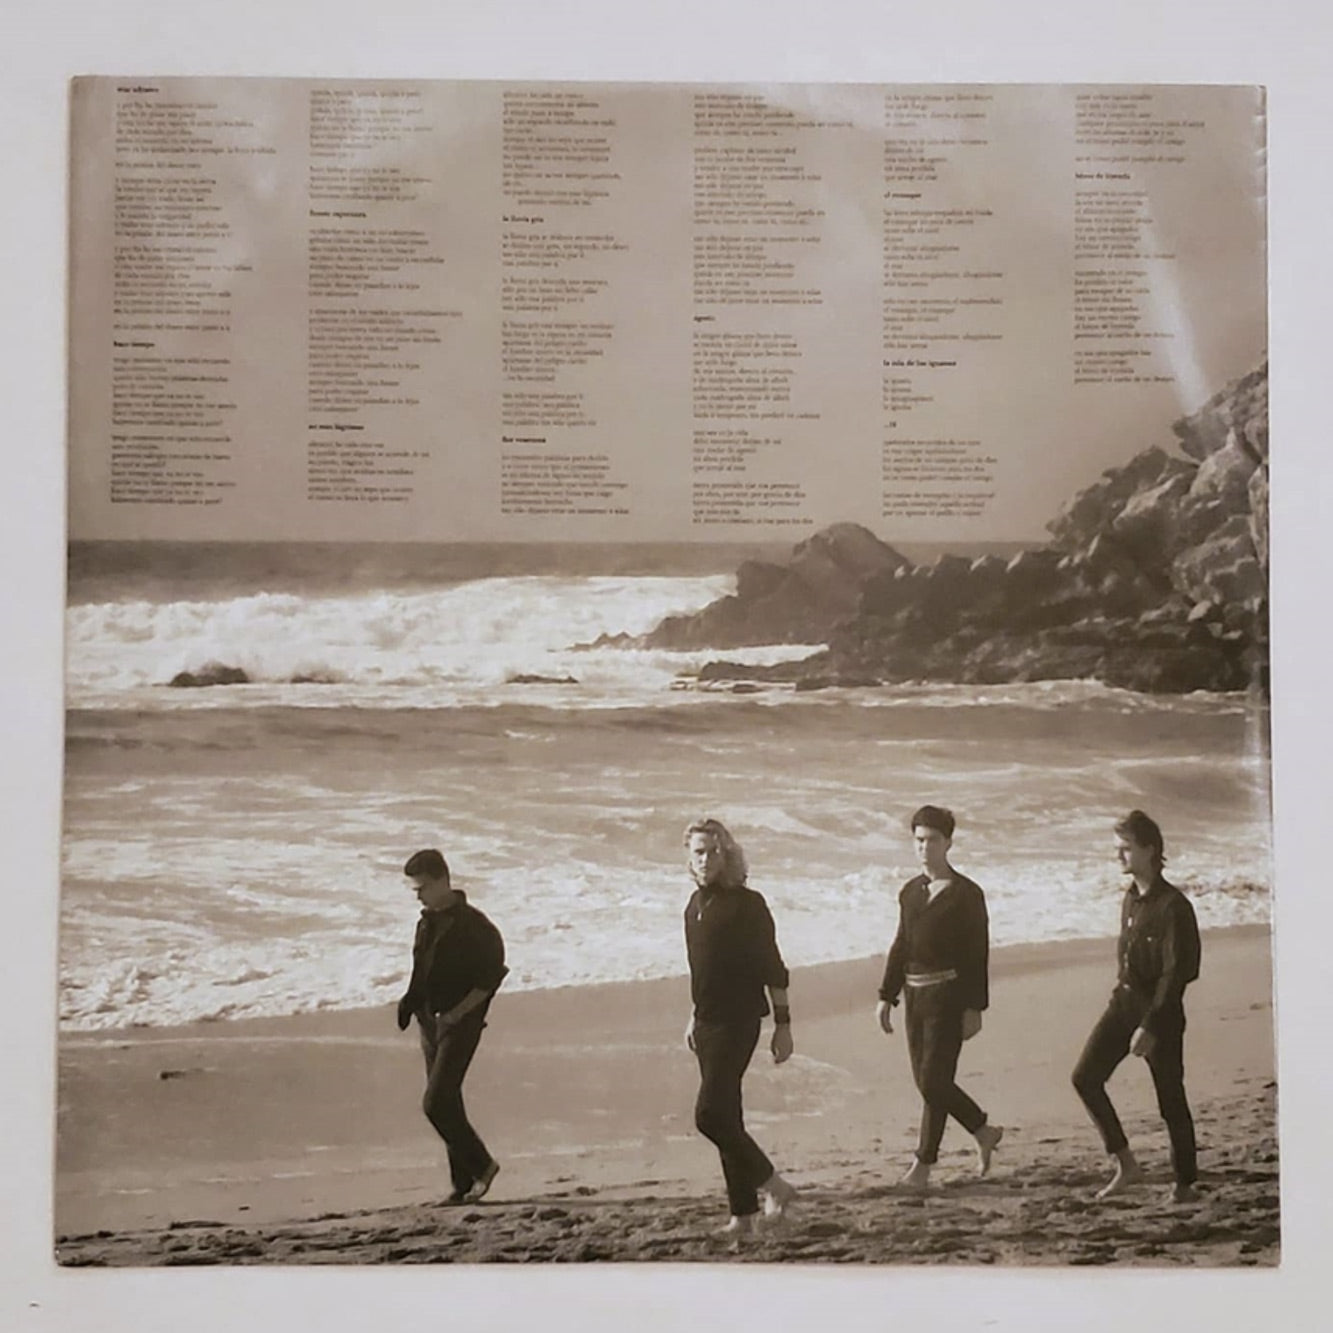  El Mar No Cesa (LP+CD): CDs y Vinilo